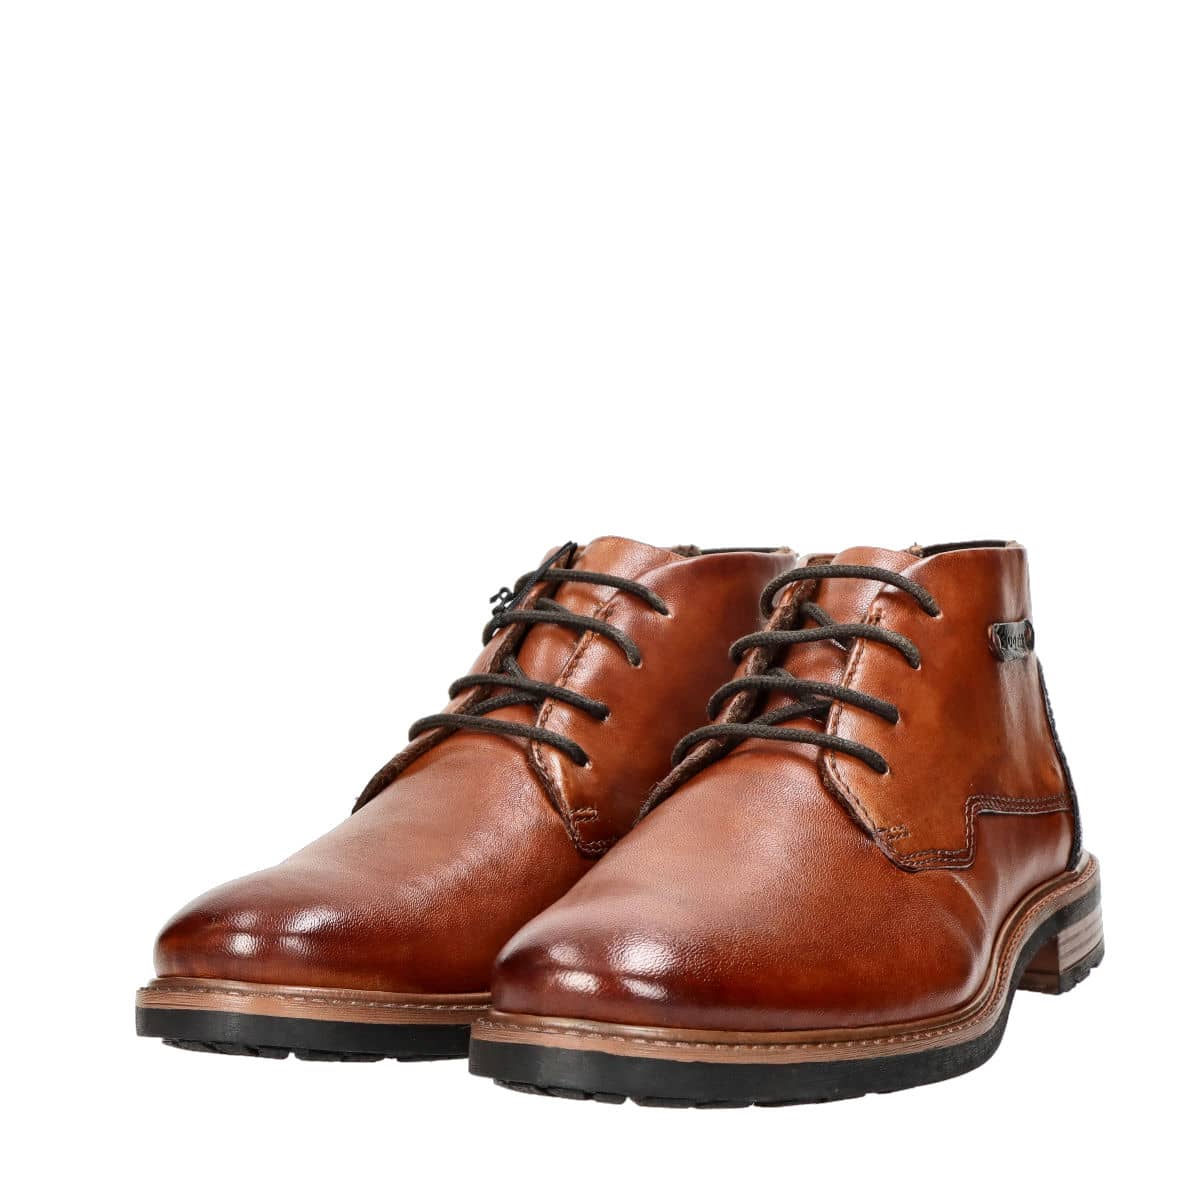 Bugatti men's leather ankle shoes - cognac brown